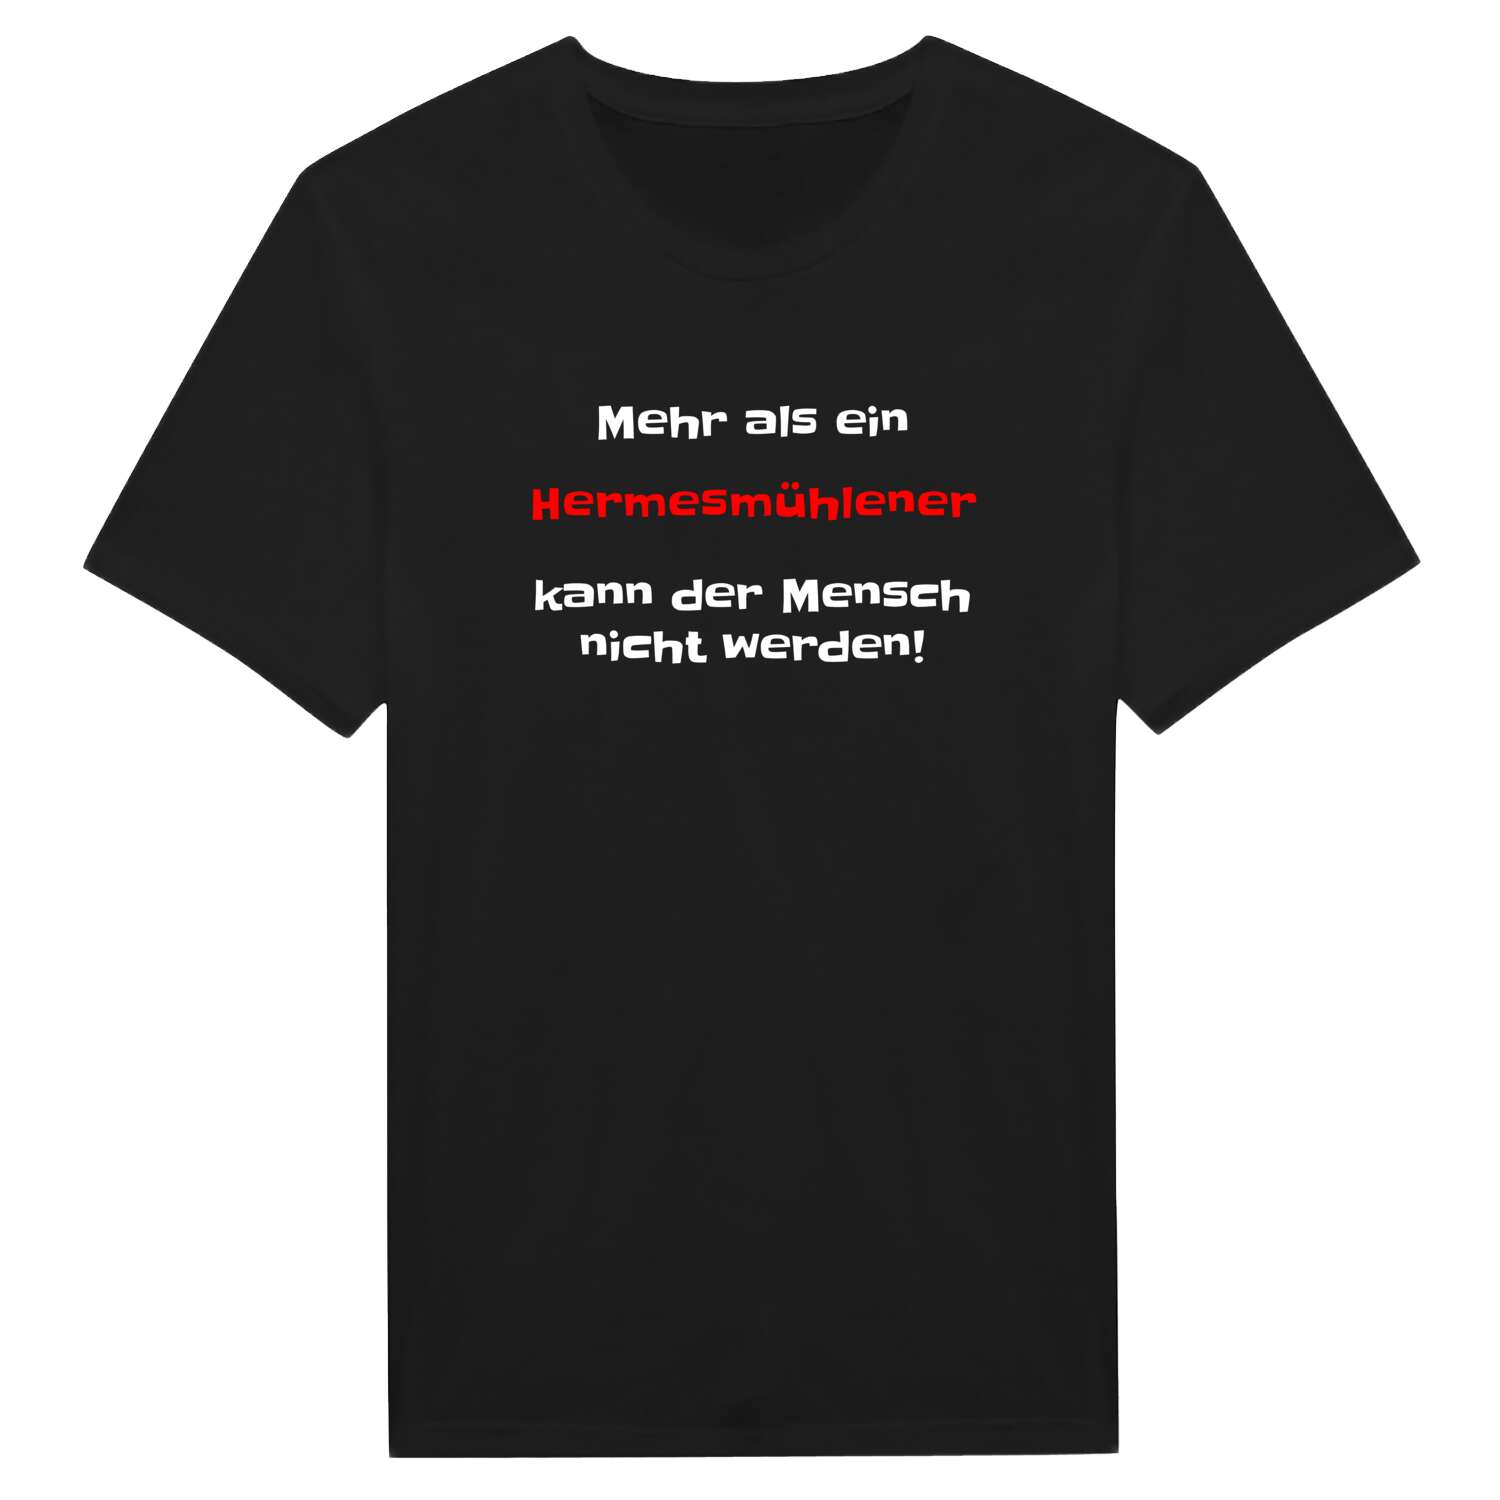 Hermesmühle T-Shirt »Mehr als ein«